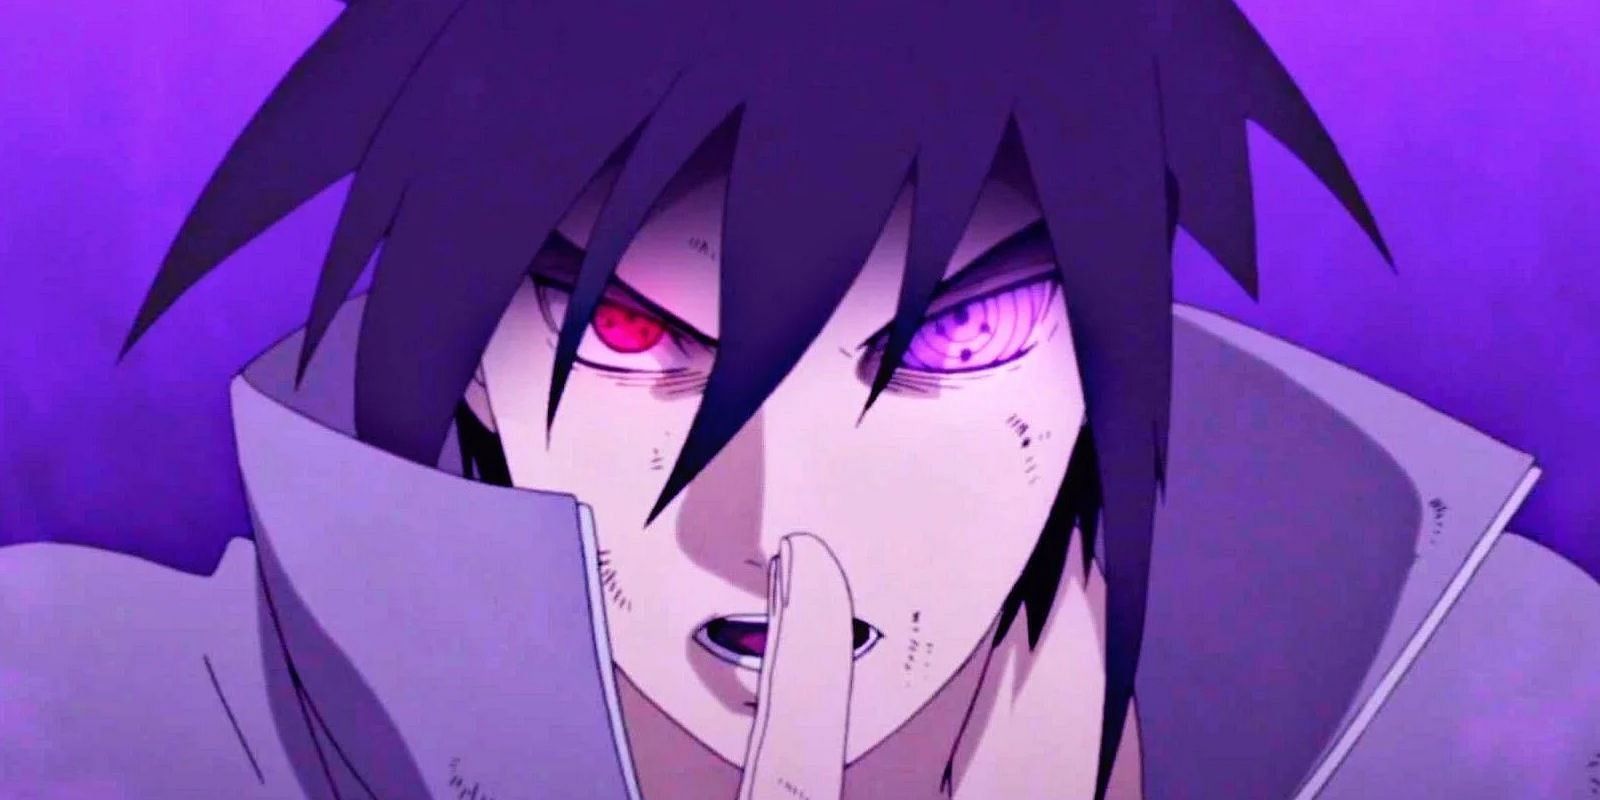 Sasuke Uchiha as seen in Naruto Shippuden (Image via Studio Pierrot)